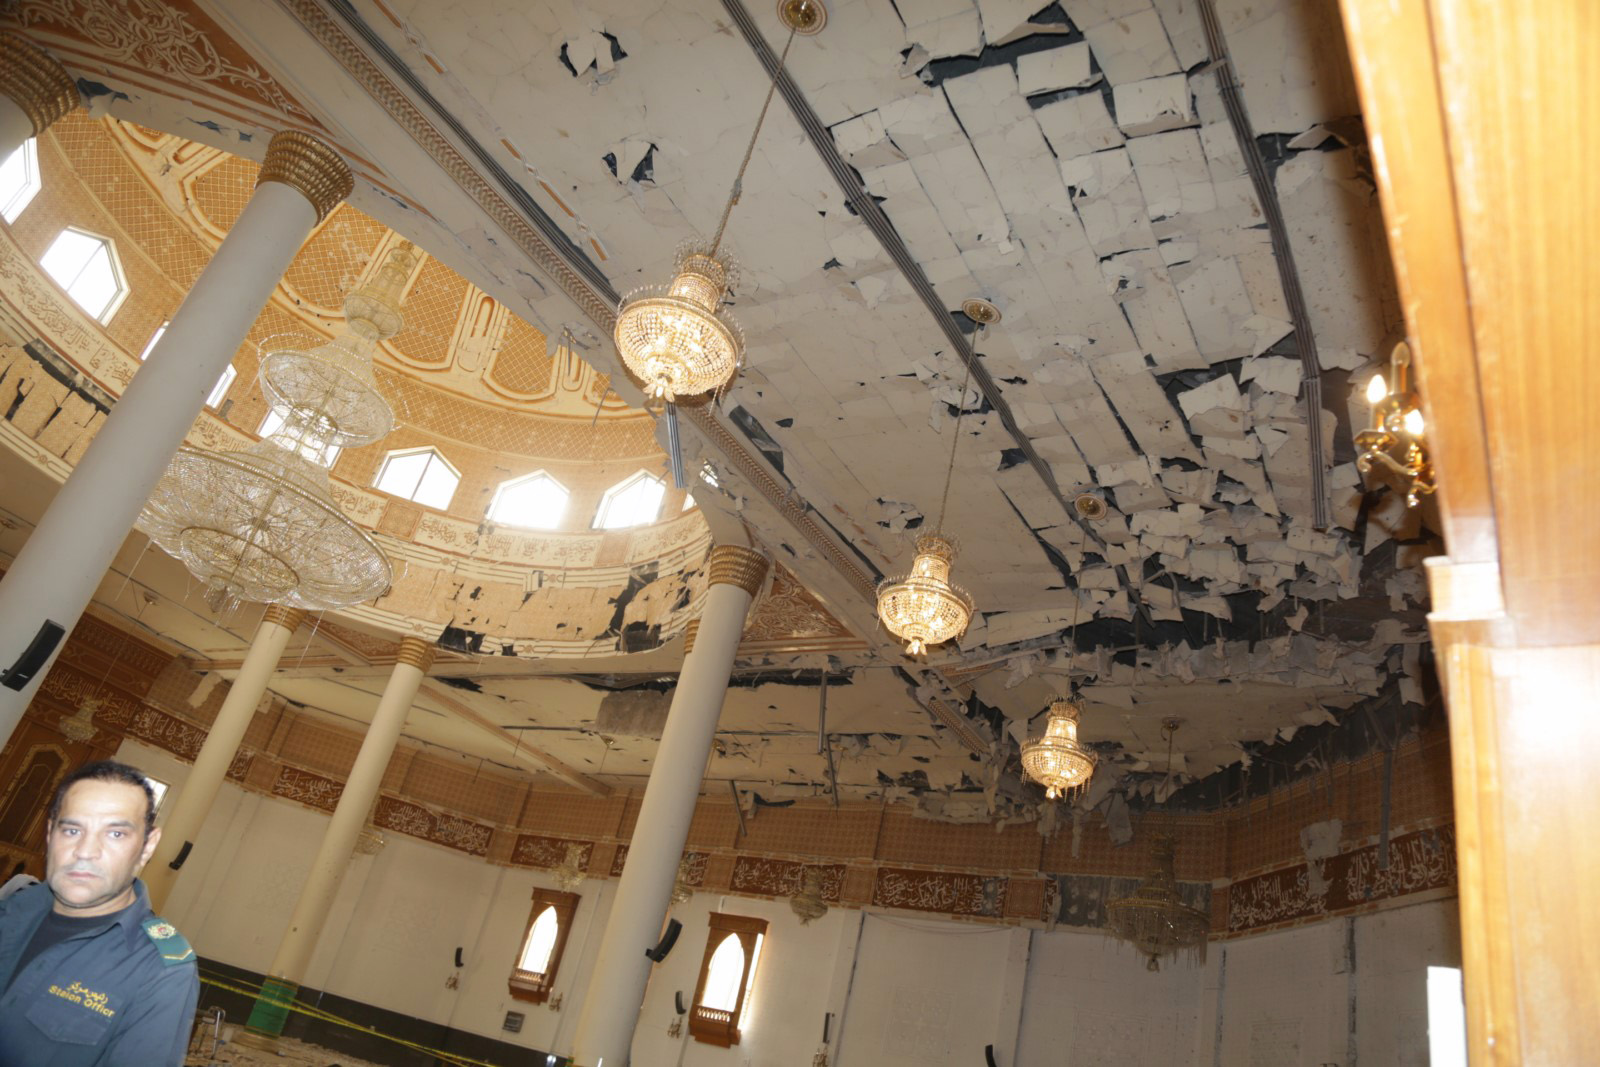 اثار الارهاب الاثم التي طالت مسجد الامام الصادق جراء التفجير الإرهابي الذي وقع يوم الجمعة 26 يونيو 